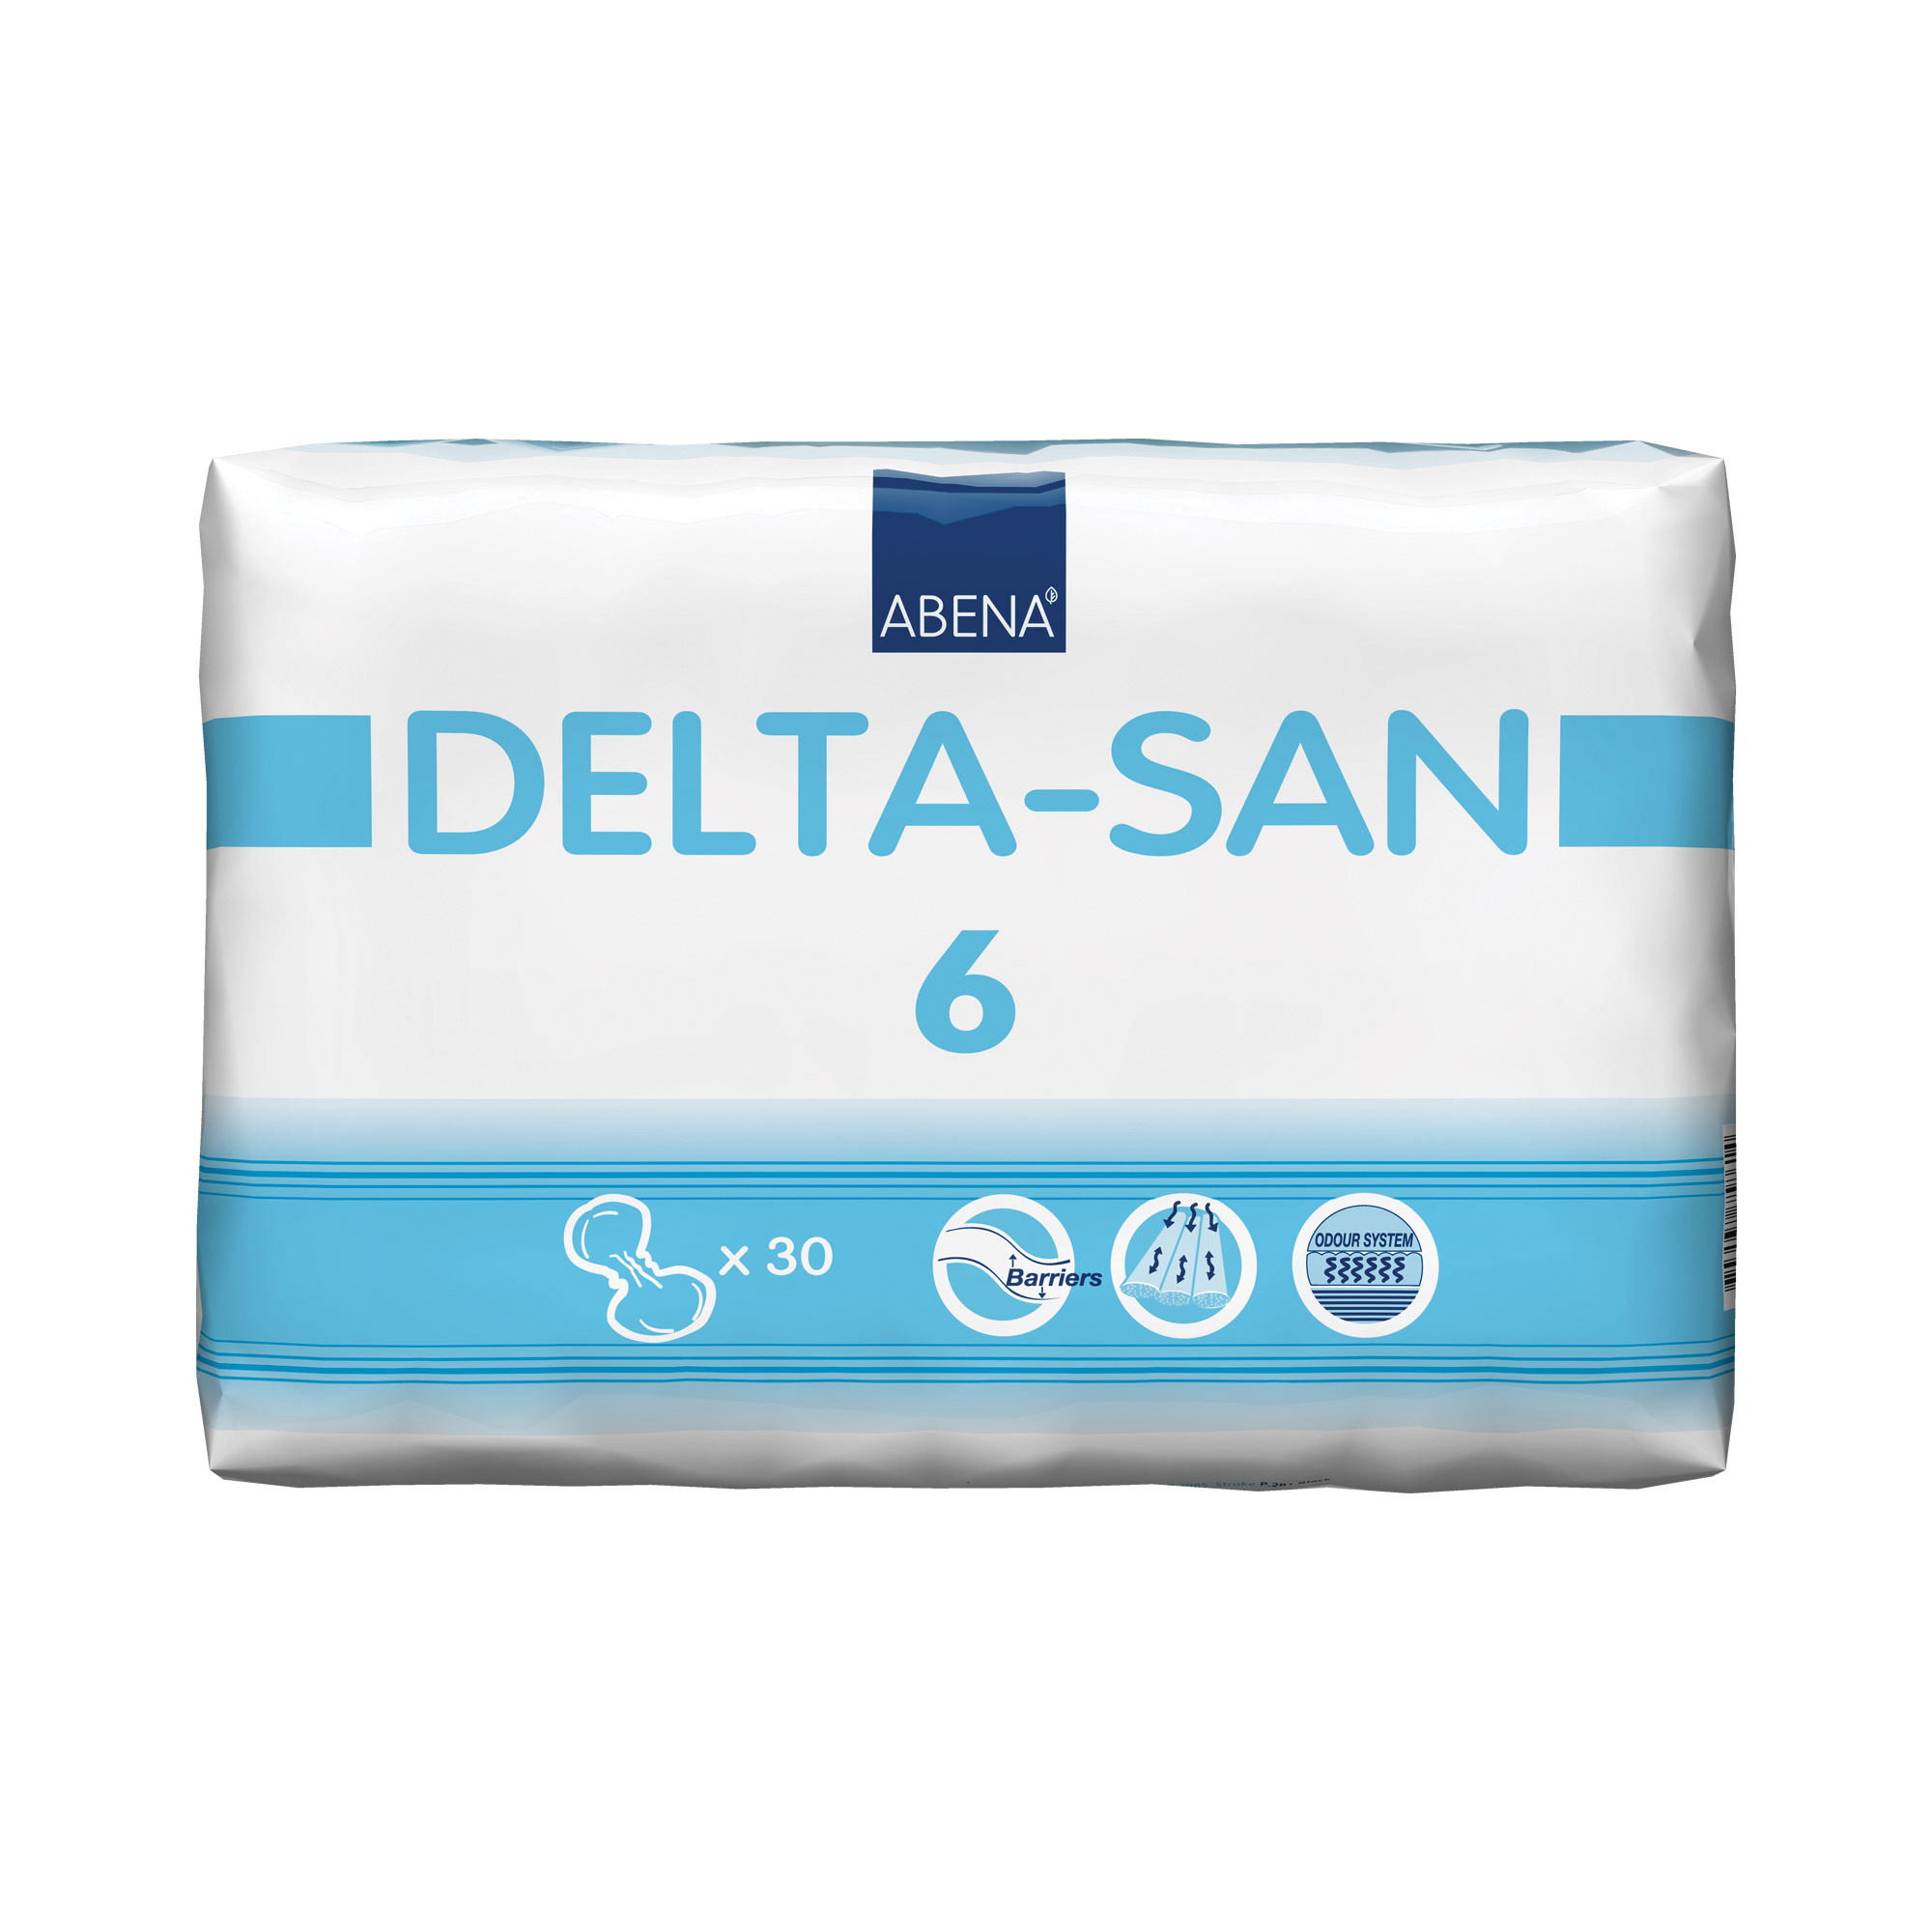 Delta-San 6 - 30 Pack